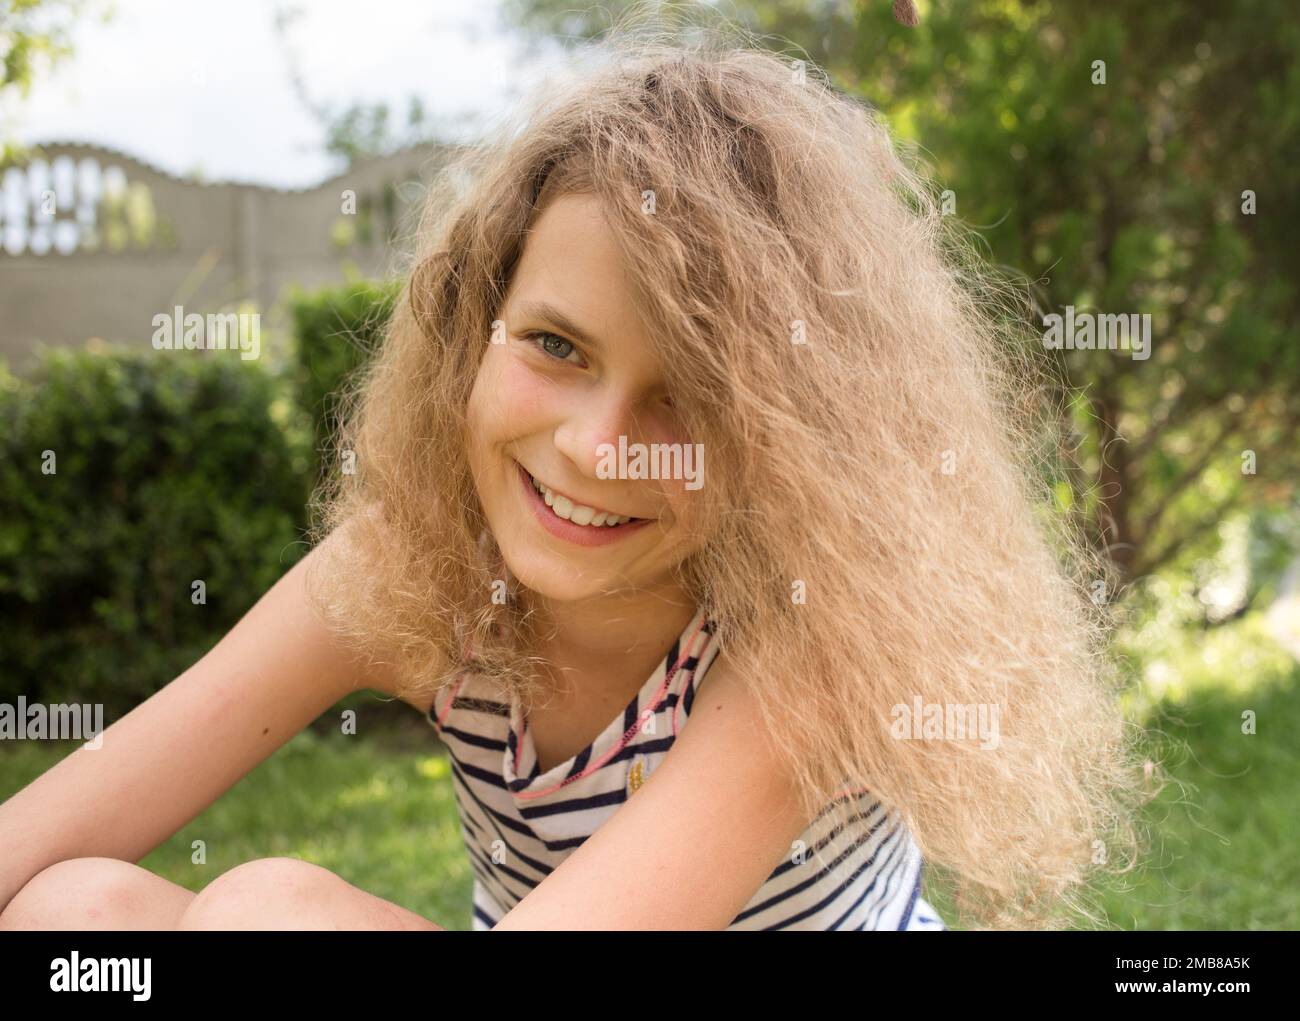 Porträt eines charmanten lächelnden Mädchen 12 Jahre alt im Park im Freien. Genießen Sie den Moment, positive Absicht, fröhliche Sommerstimmung Stockfoto